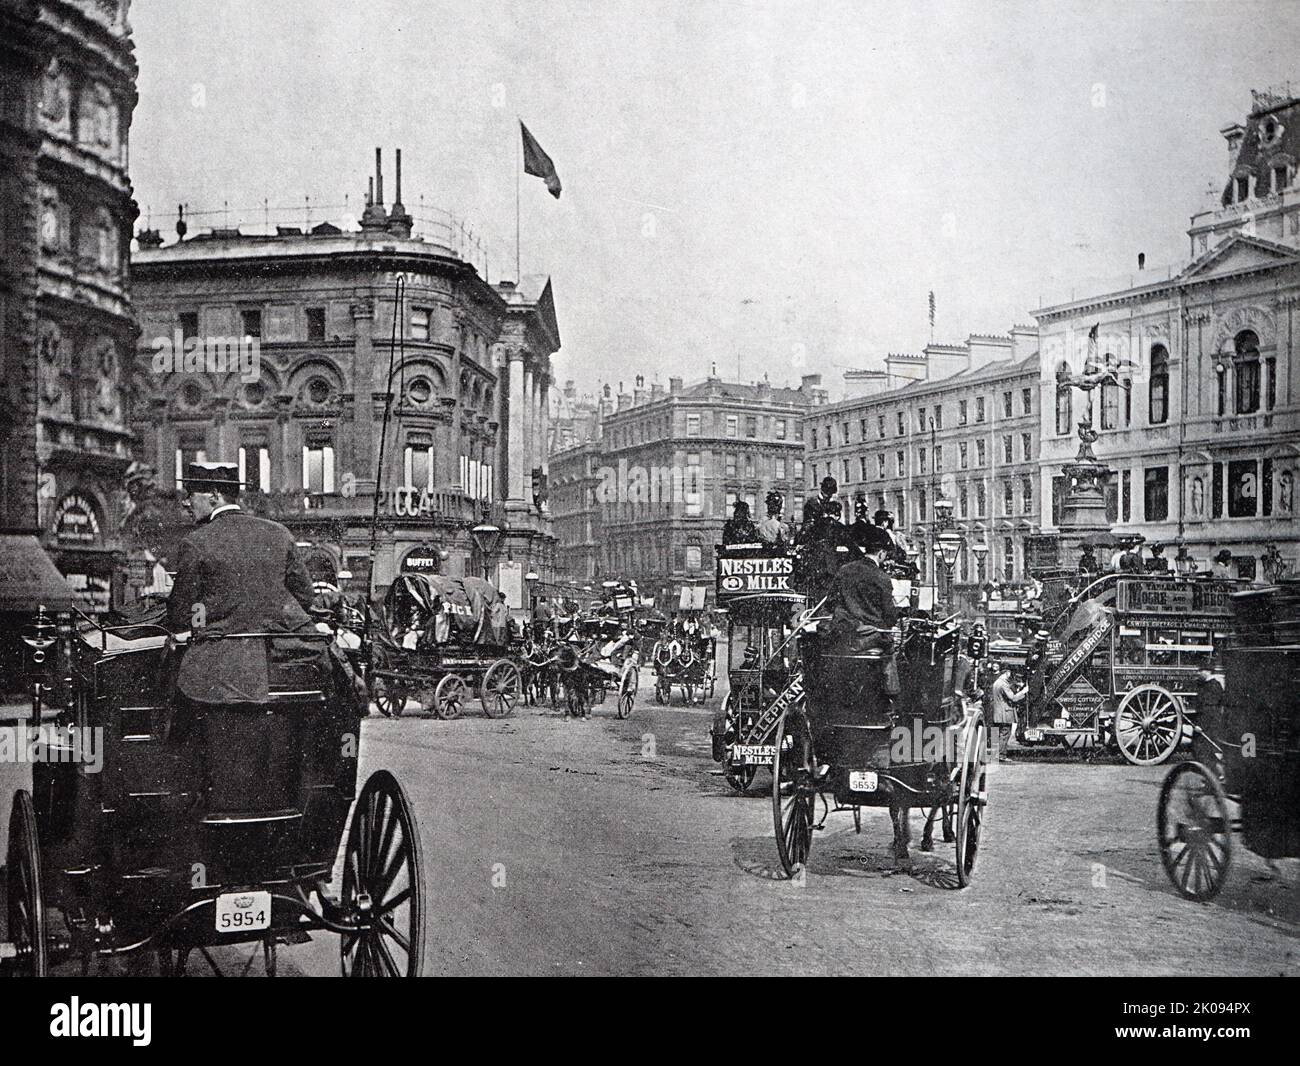 Piccadilly Circus es un cruce de carreteras y un espacio público del West End de Londres en la ciudad de Westminster. Fue construido en 1819 para conectar Regent Street con Piccadilly. Foto de stock